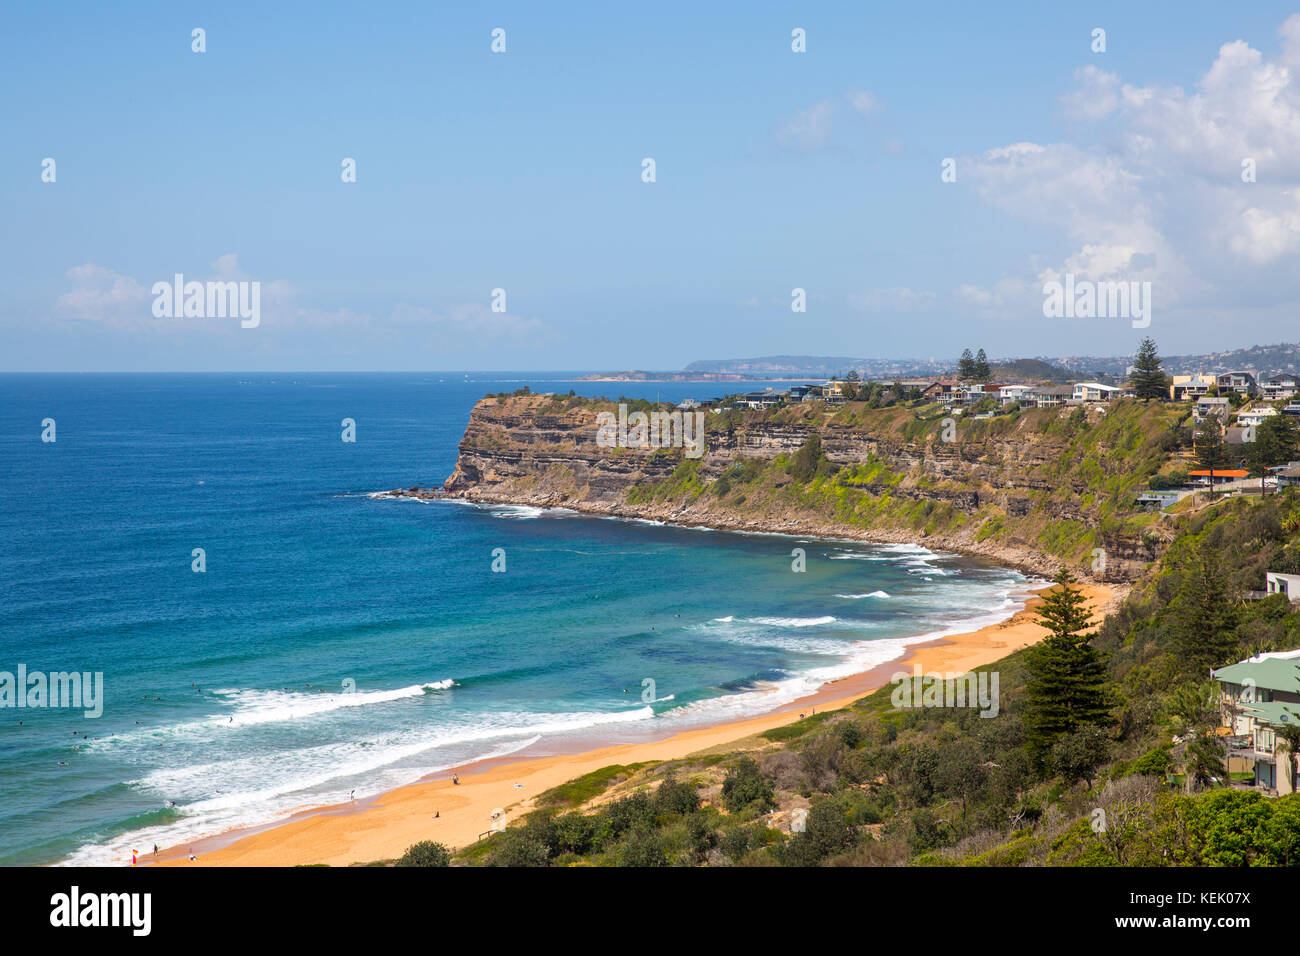 Vista de la playa Bungan en Newport, una de las playas del norte de Sydney, New South Wales, Australia Foto de stock